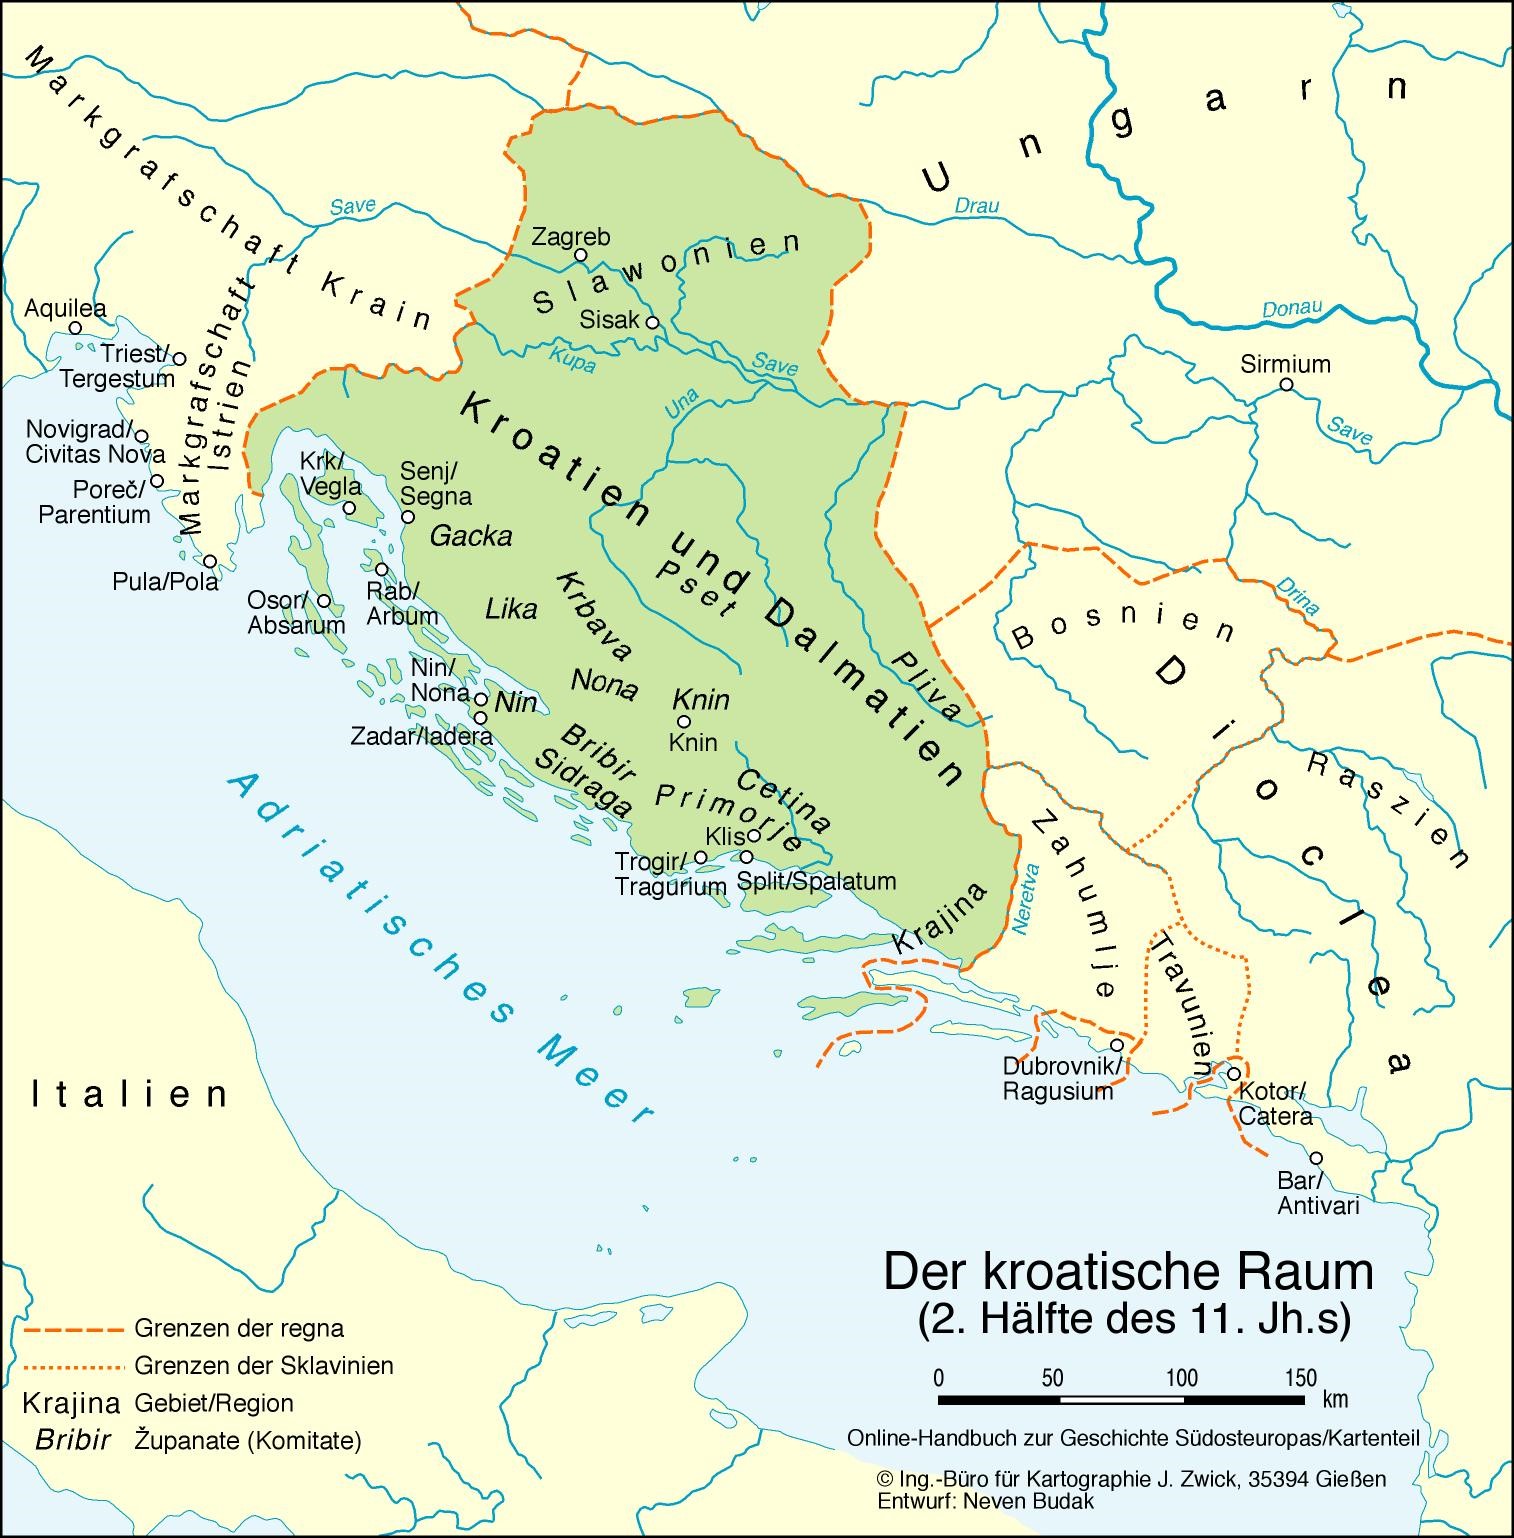 Der kroatische Raum (2. Hälfte des 11. Jh.s)